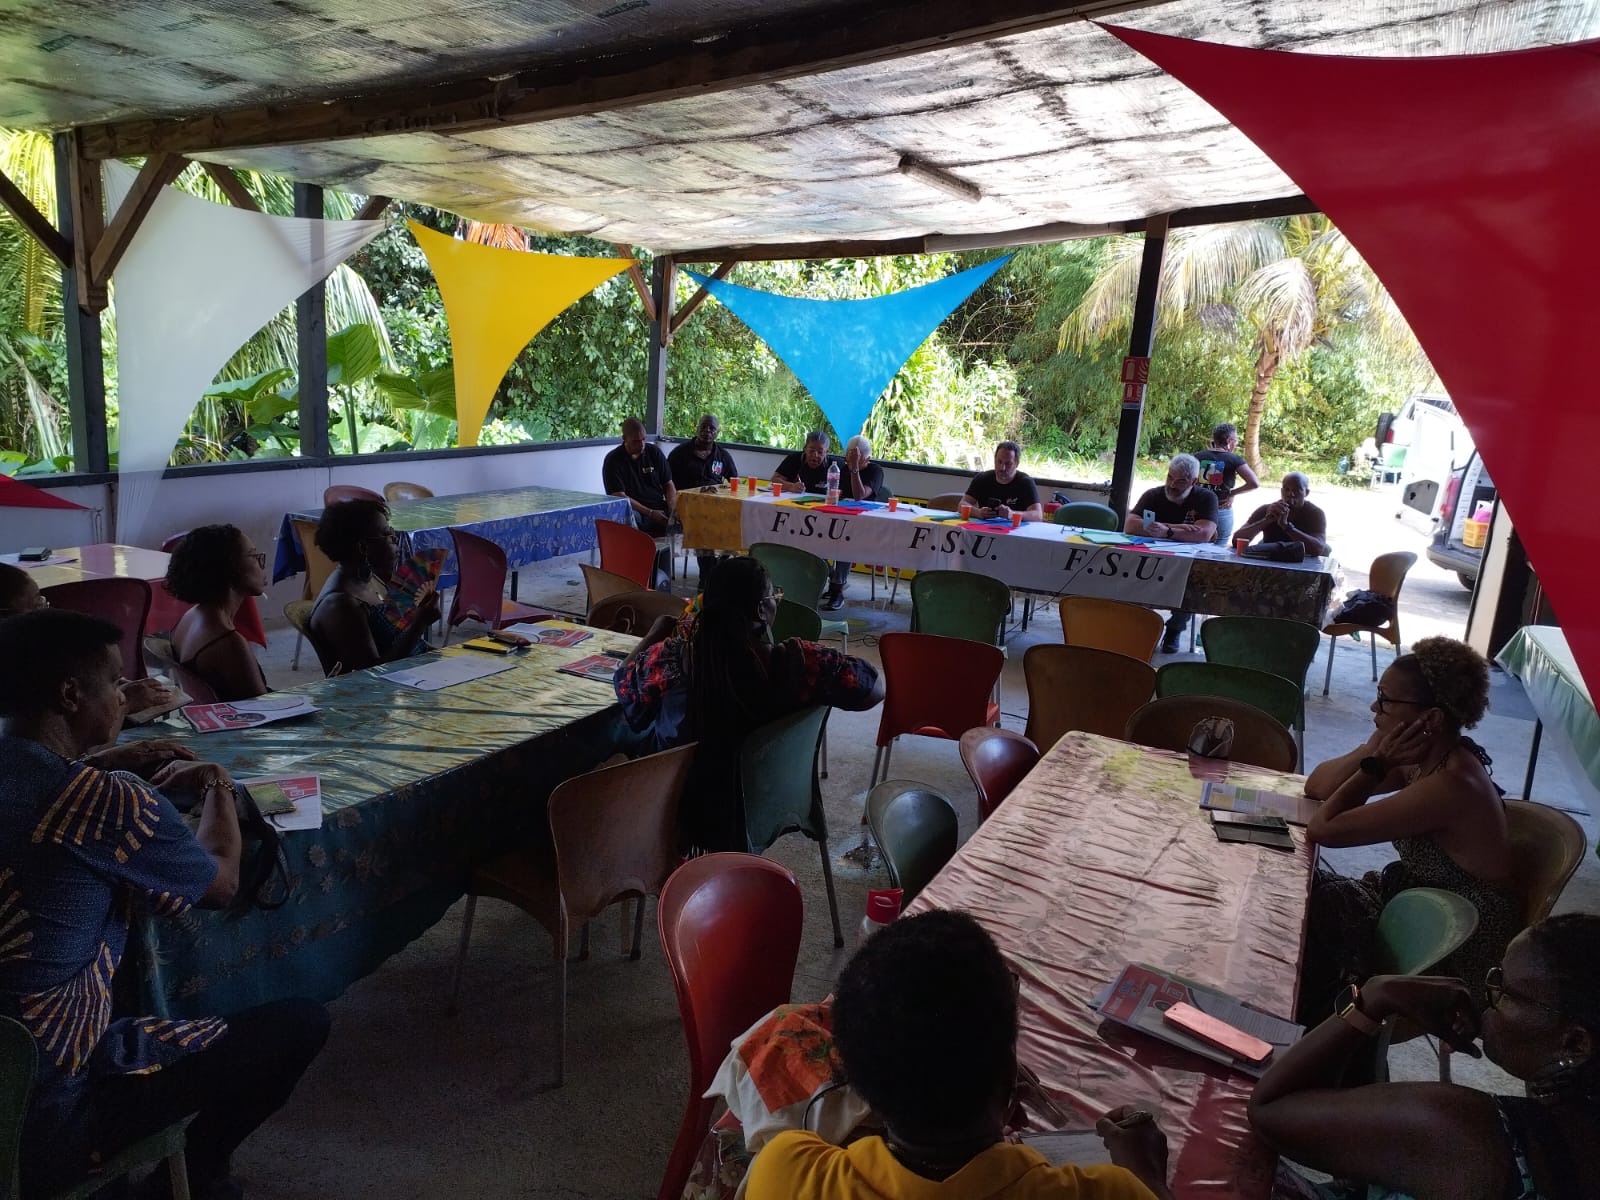     En Guadeloupe, les syndicats de l’Education ont fait leur rentrée sur fond de manque d’effectifs

